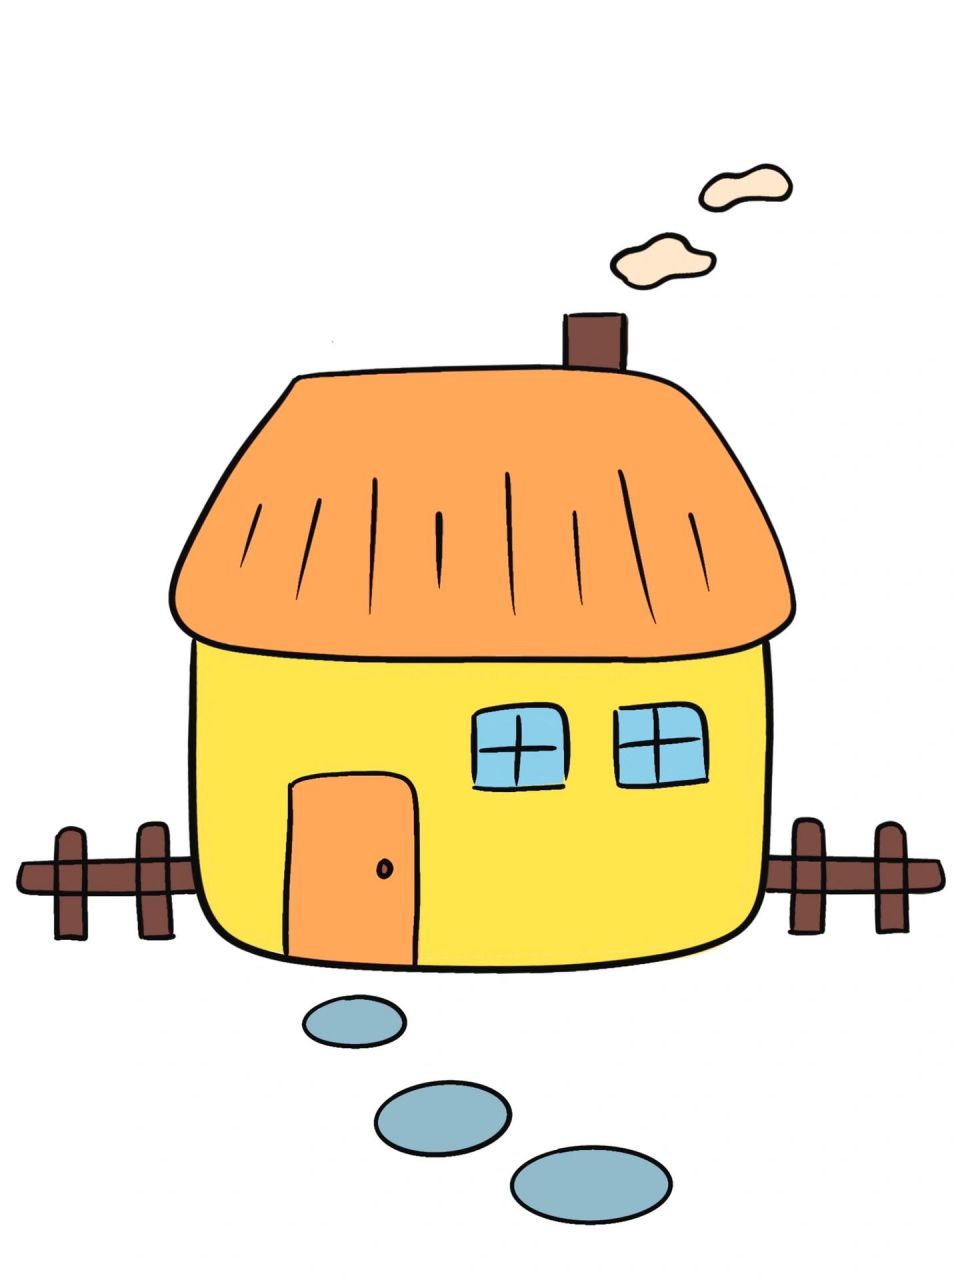 简笔画教程分享 温暖的小房子92 简笔画教程分享 温暖的小房子92!